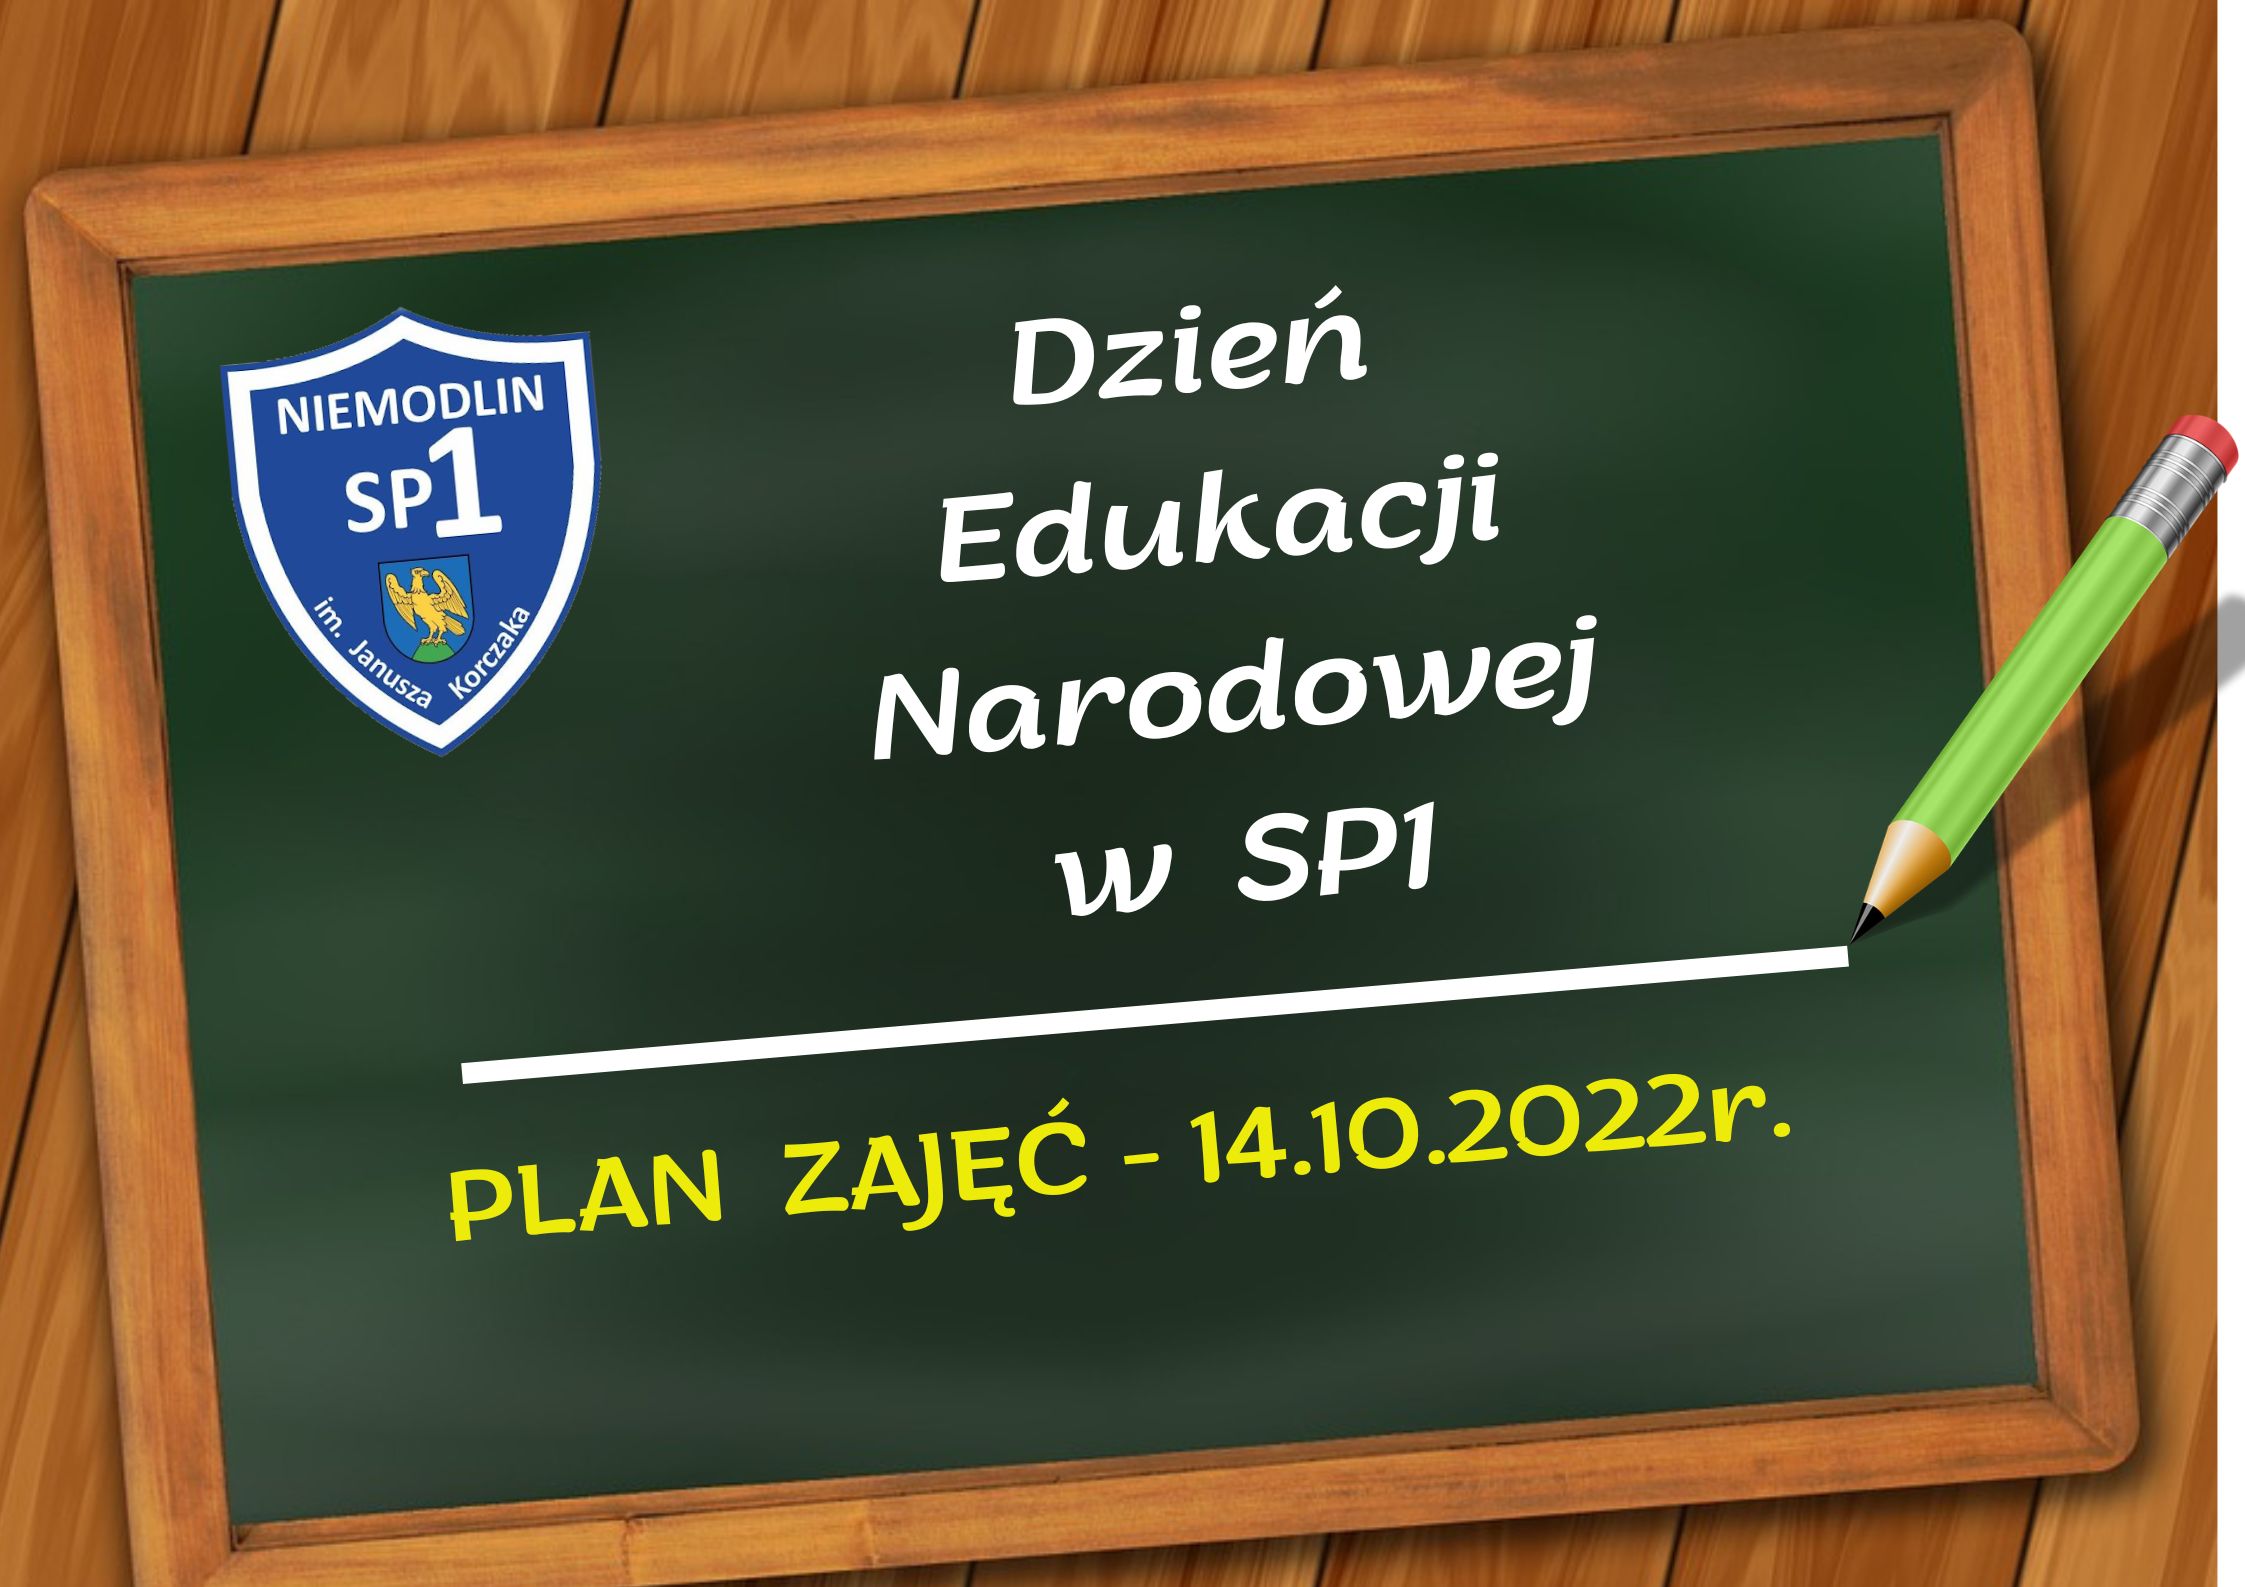 Dzień Edukacji Narodowej w SP1 - plan zajęć 14.10.2022r.